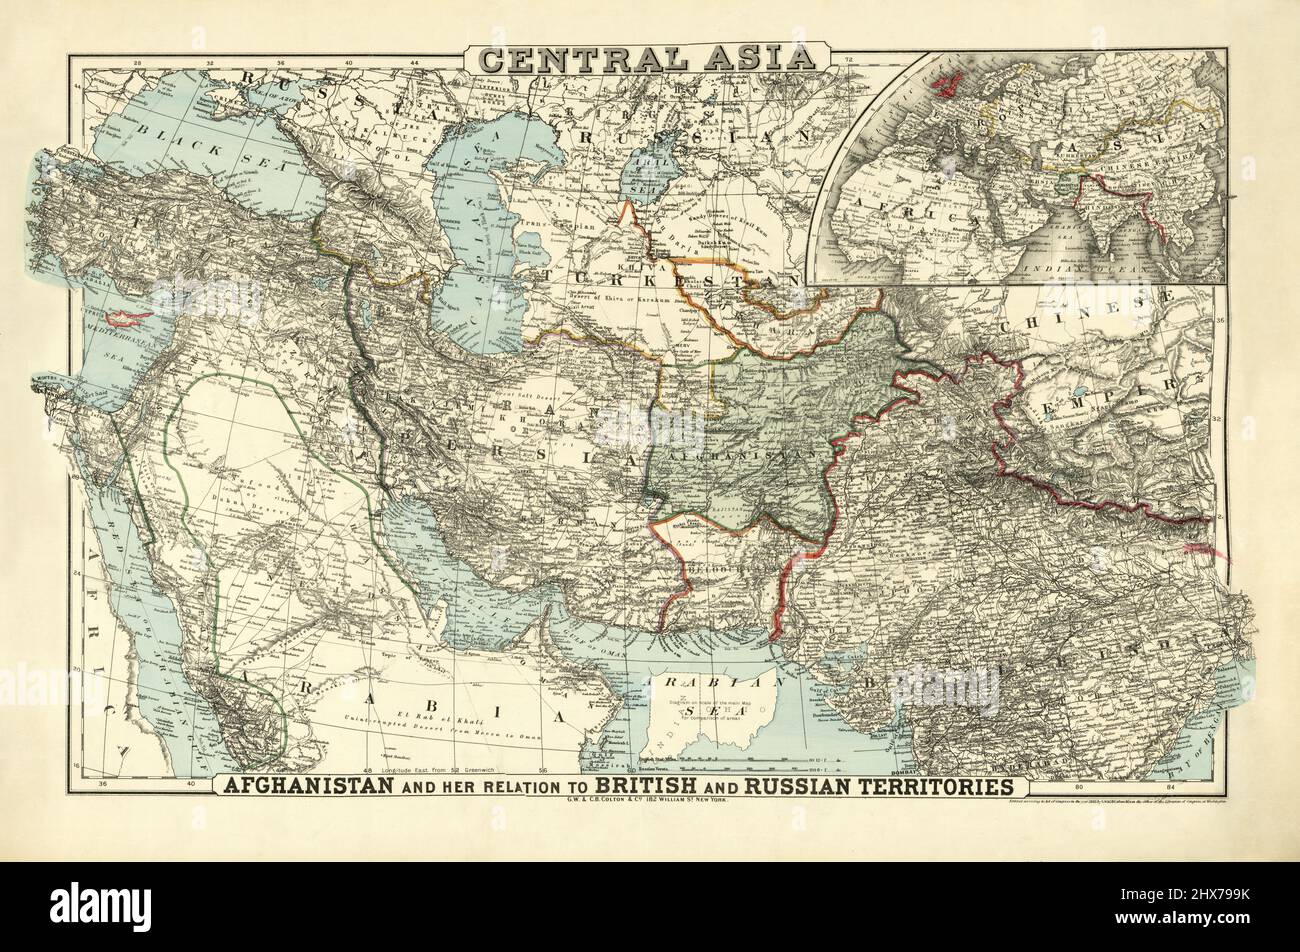 Asia centrale di G.W. E C.B. Colton & Co. 1885. Medio Oriente - Asia meridionale - Arabia. 1885. Foto Stock